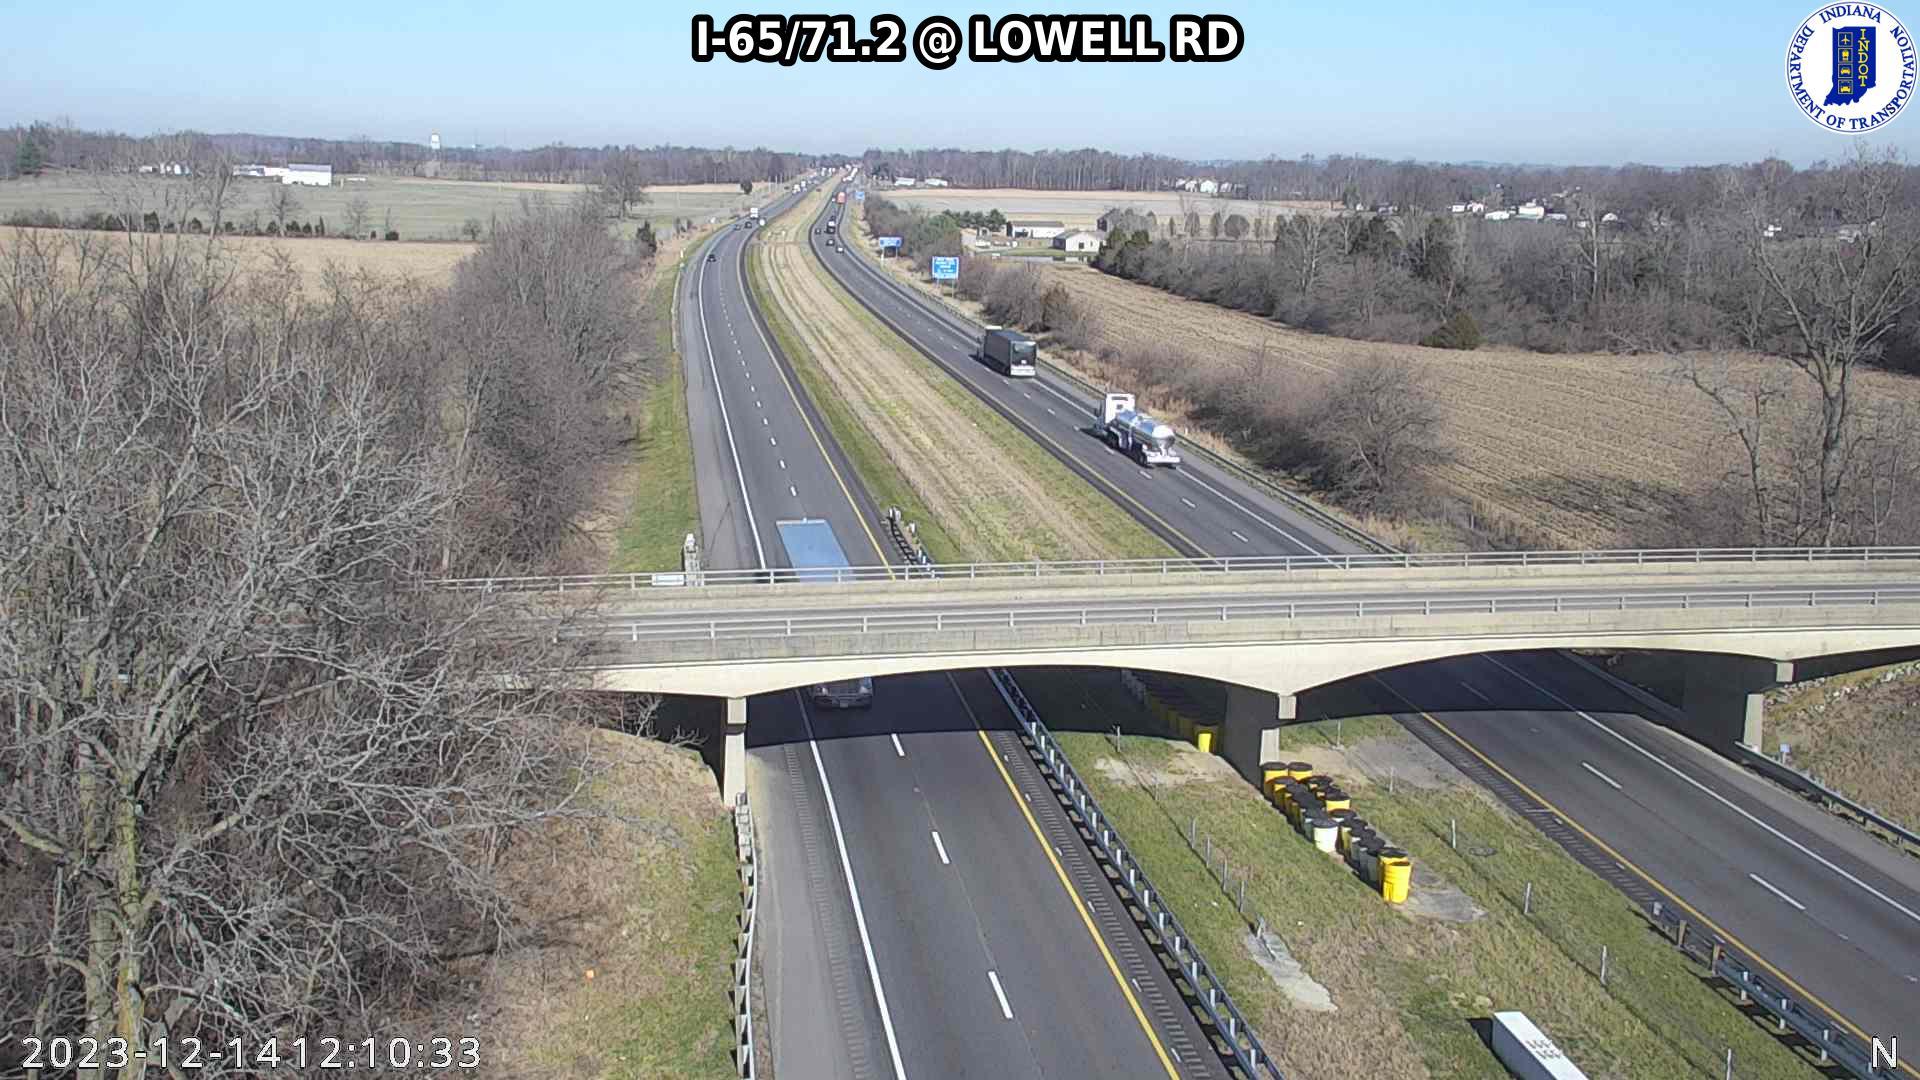 Lowell: I-65: I-65/71.2 - Rd Traffic Camera